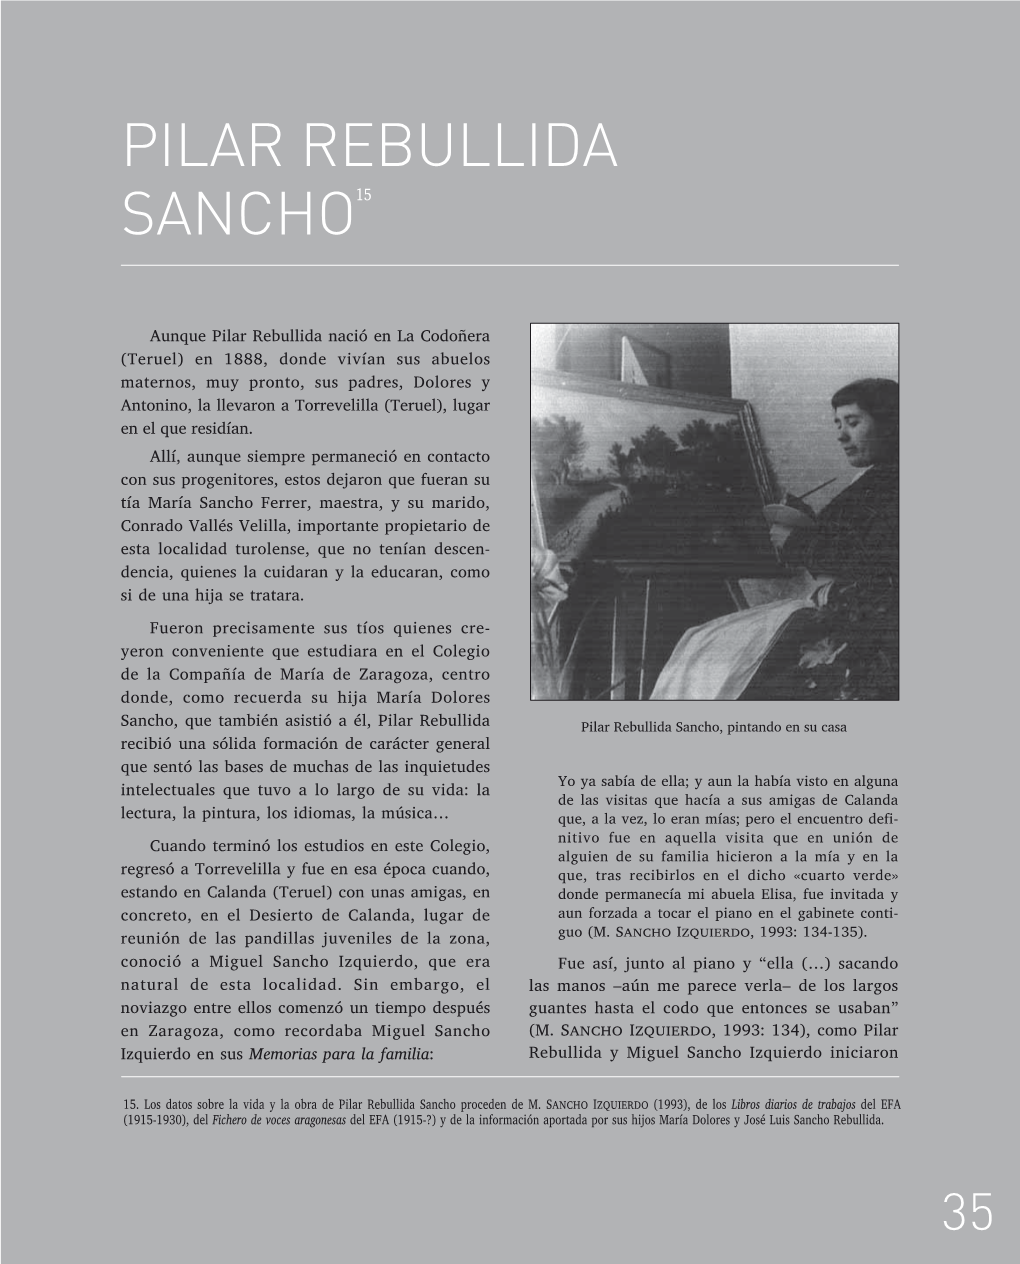 Pilar Rebullida Sancho15